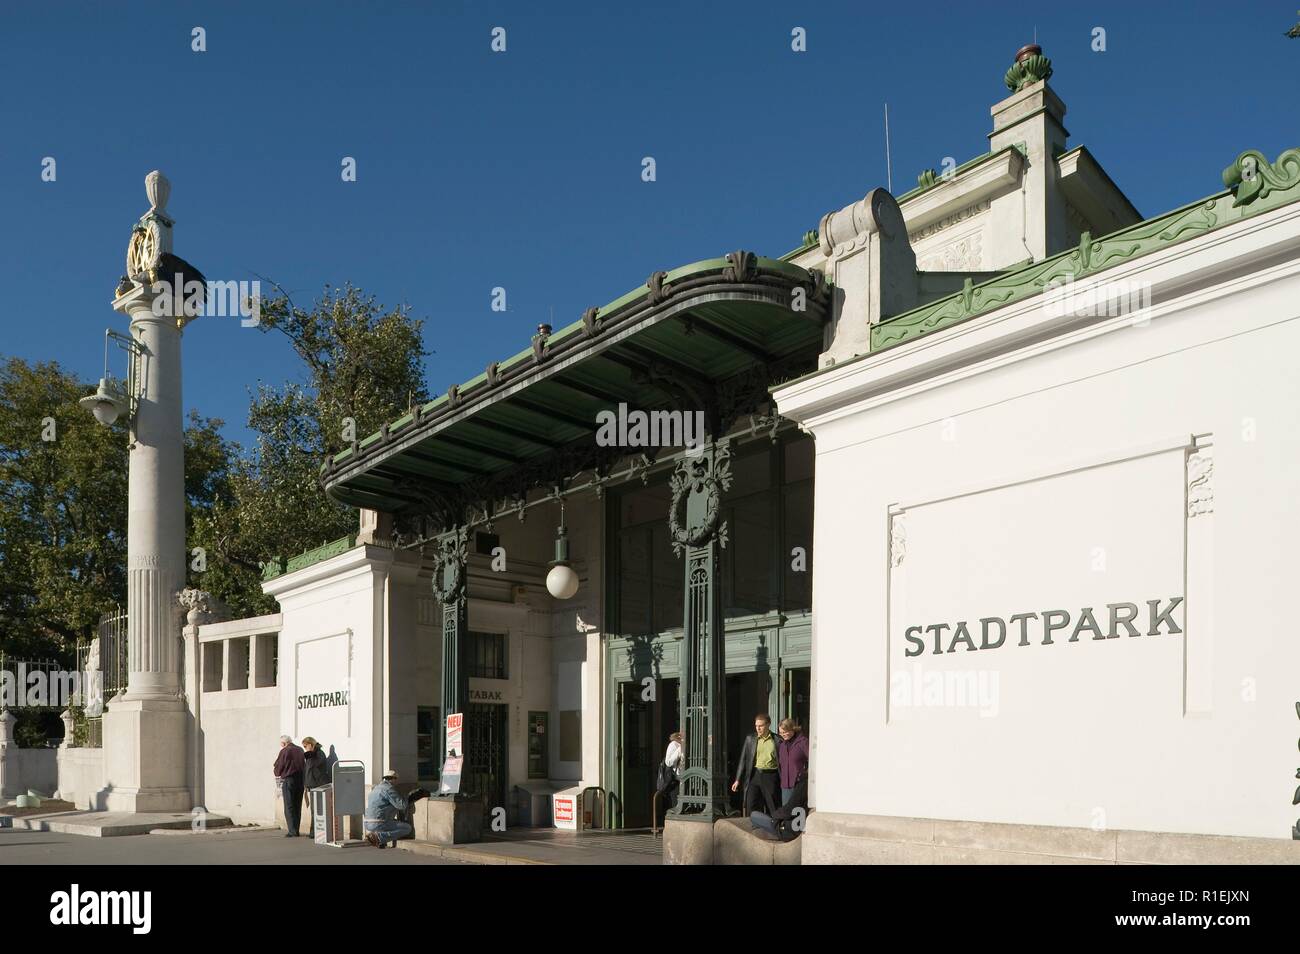 Wien, Stadtbahnstation Stadtpark von Otto Wagner - Vienna, Stadtbahn  Station Stadtpark by Architect Otto Wagner Stock Photo - Alamy